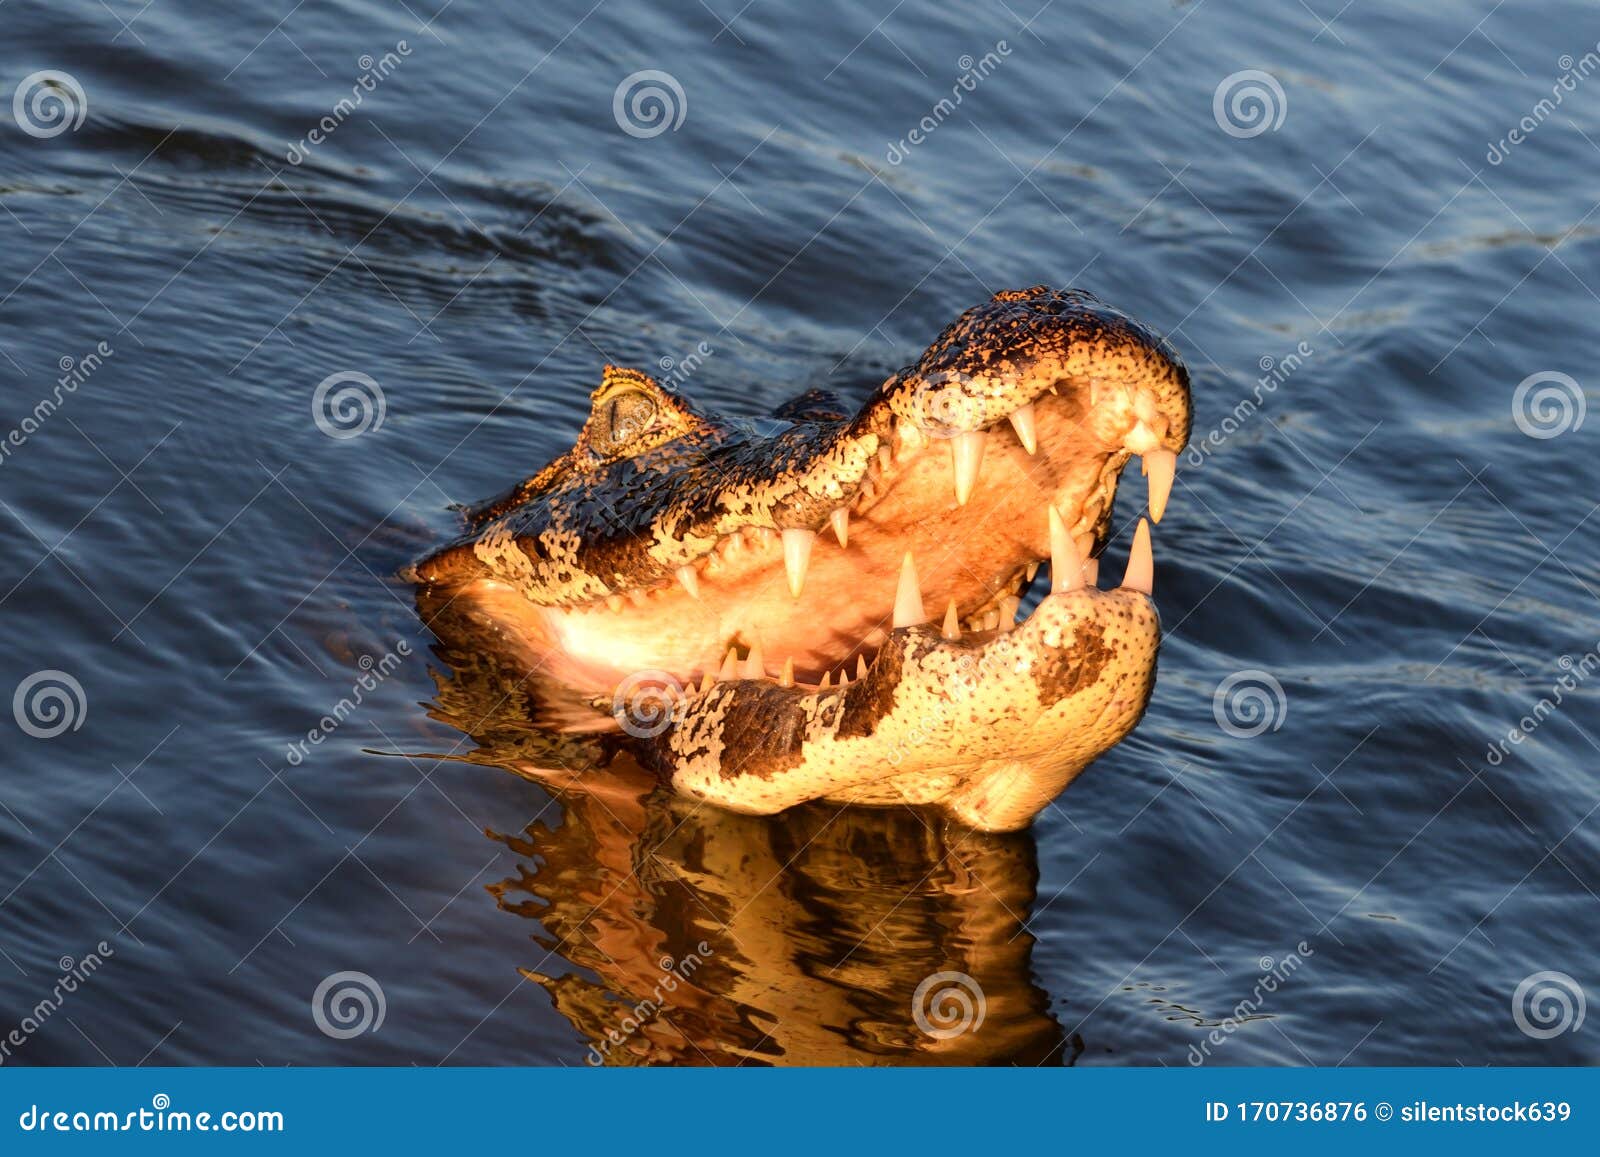 jacare caiman in rio cuiaba, pantanal, brazil